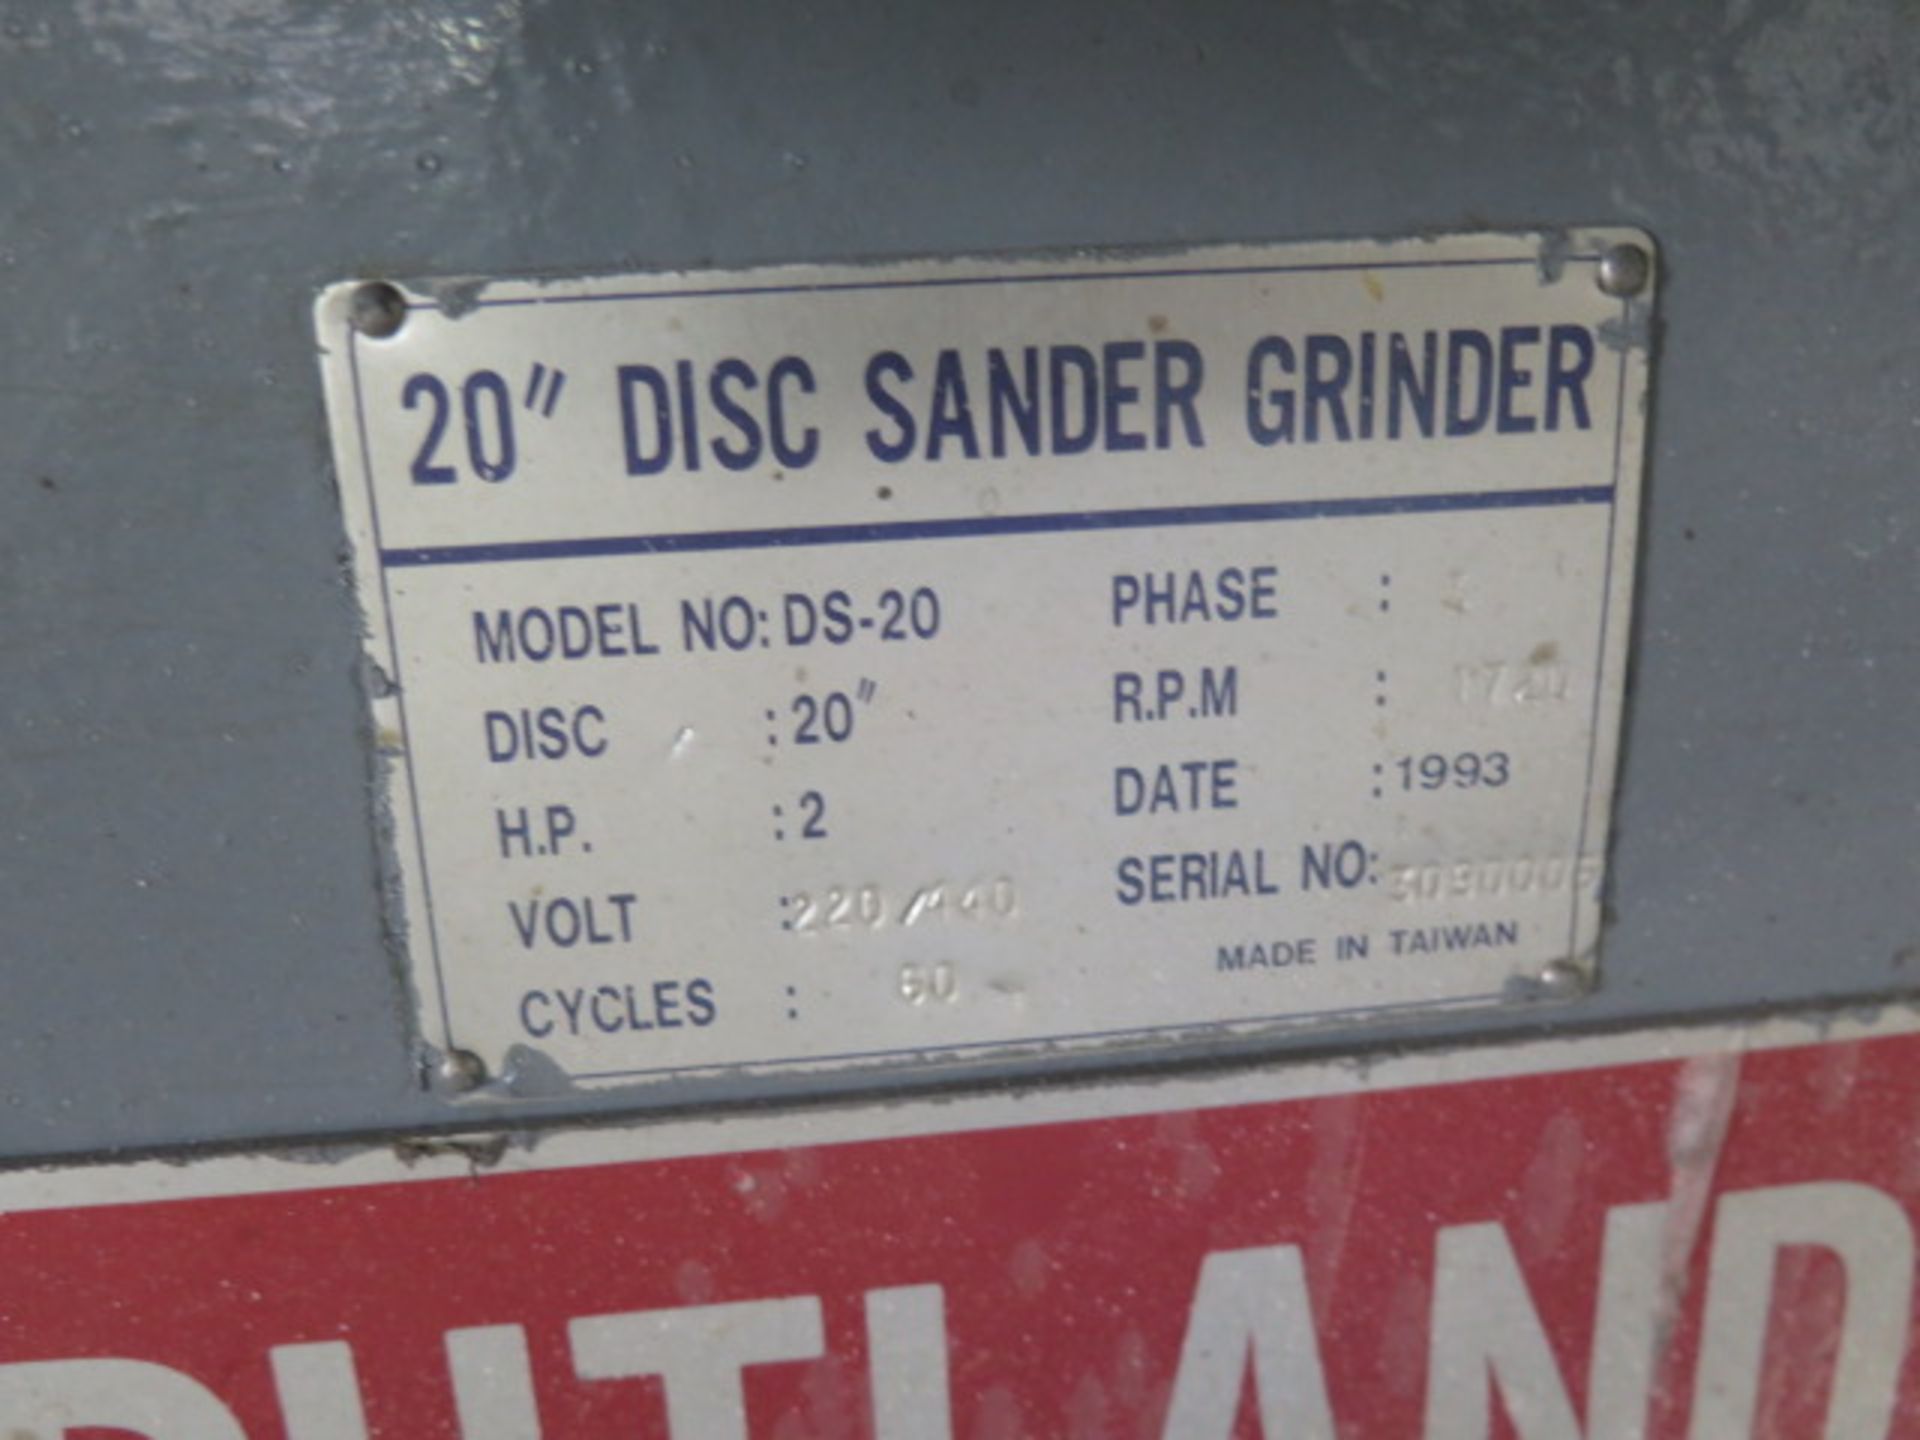 Rutland mdl. DS-20 20” Pedestal Disc Sander s/n 3090006 (SOLD AS-IS - NO WARRANTY) - Image 6 of 6